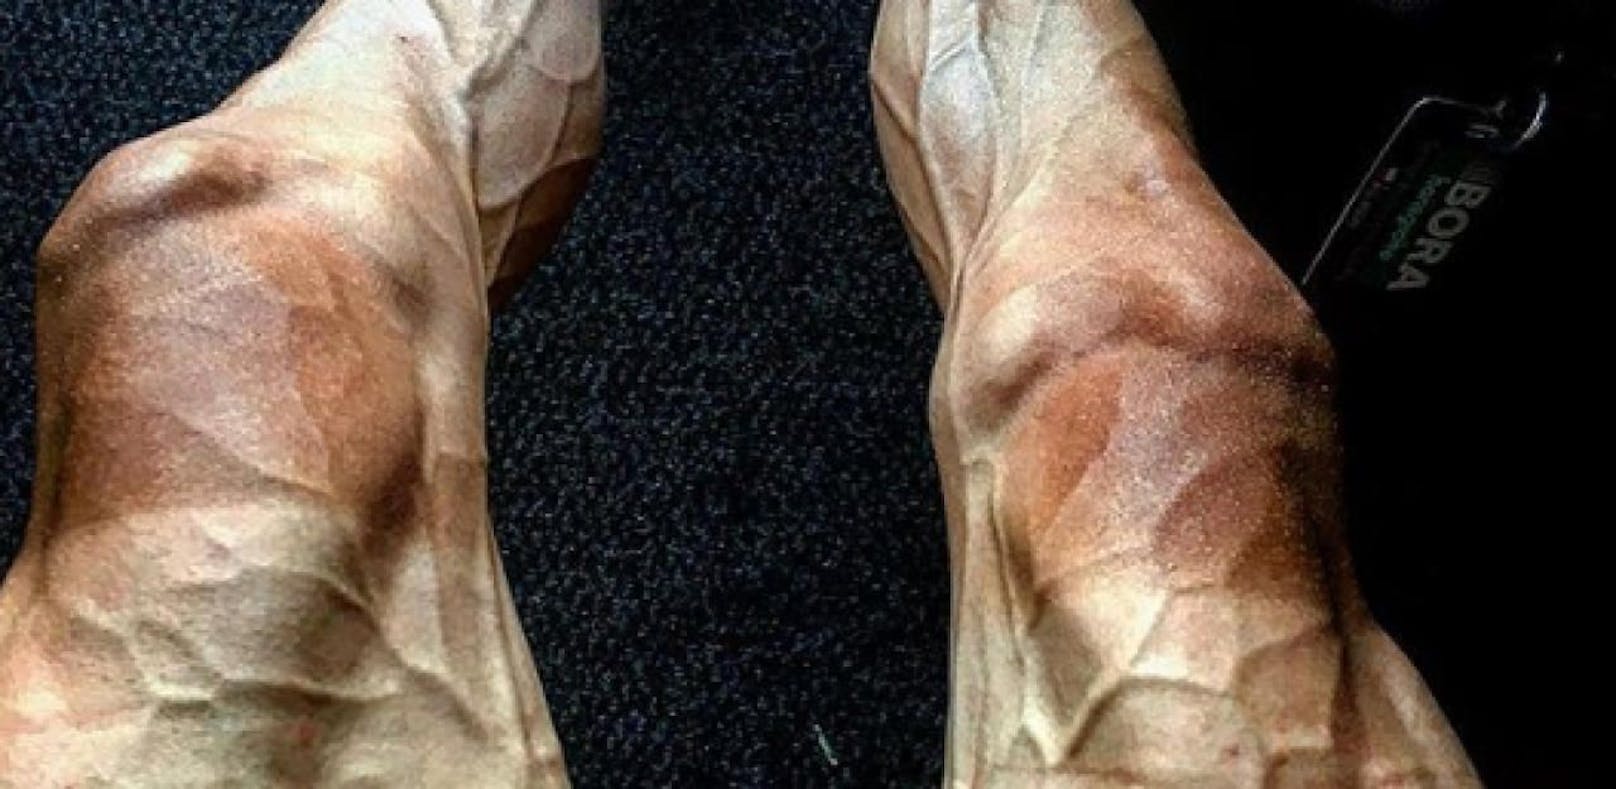 Bild geht um die Welt: Arzt erklärt die Grusel-Beine